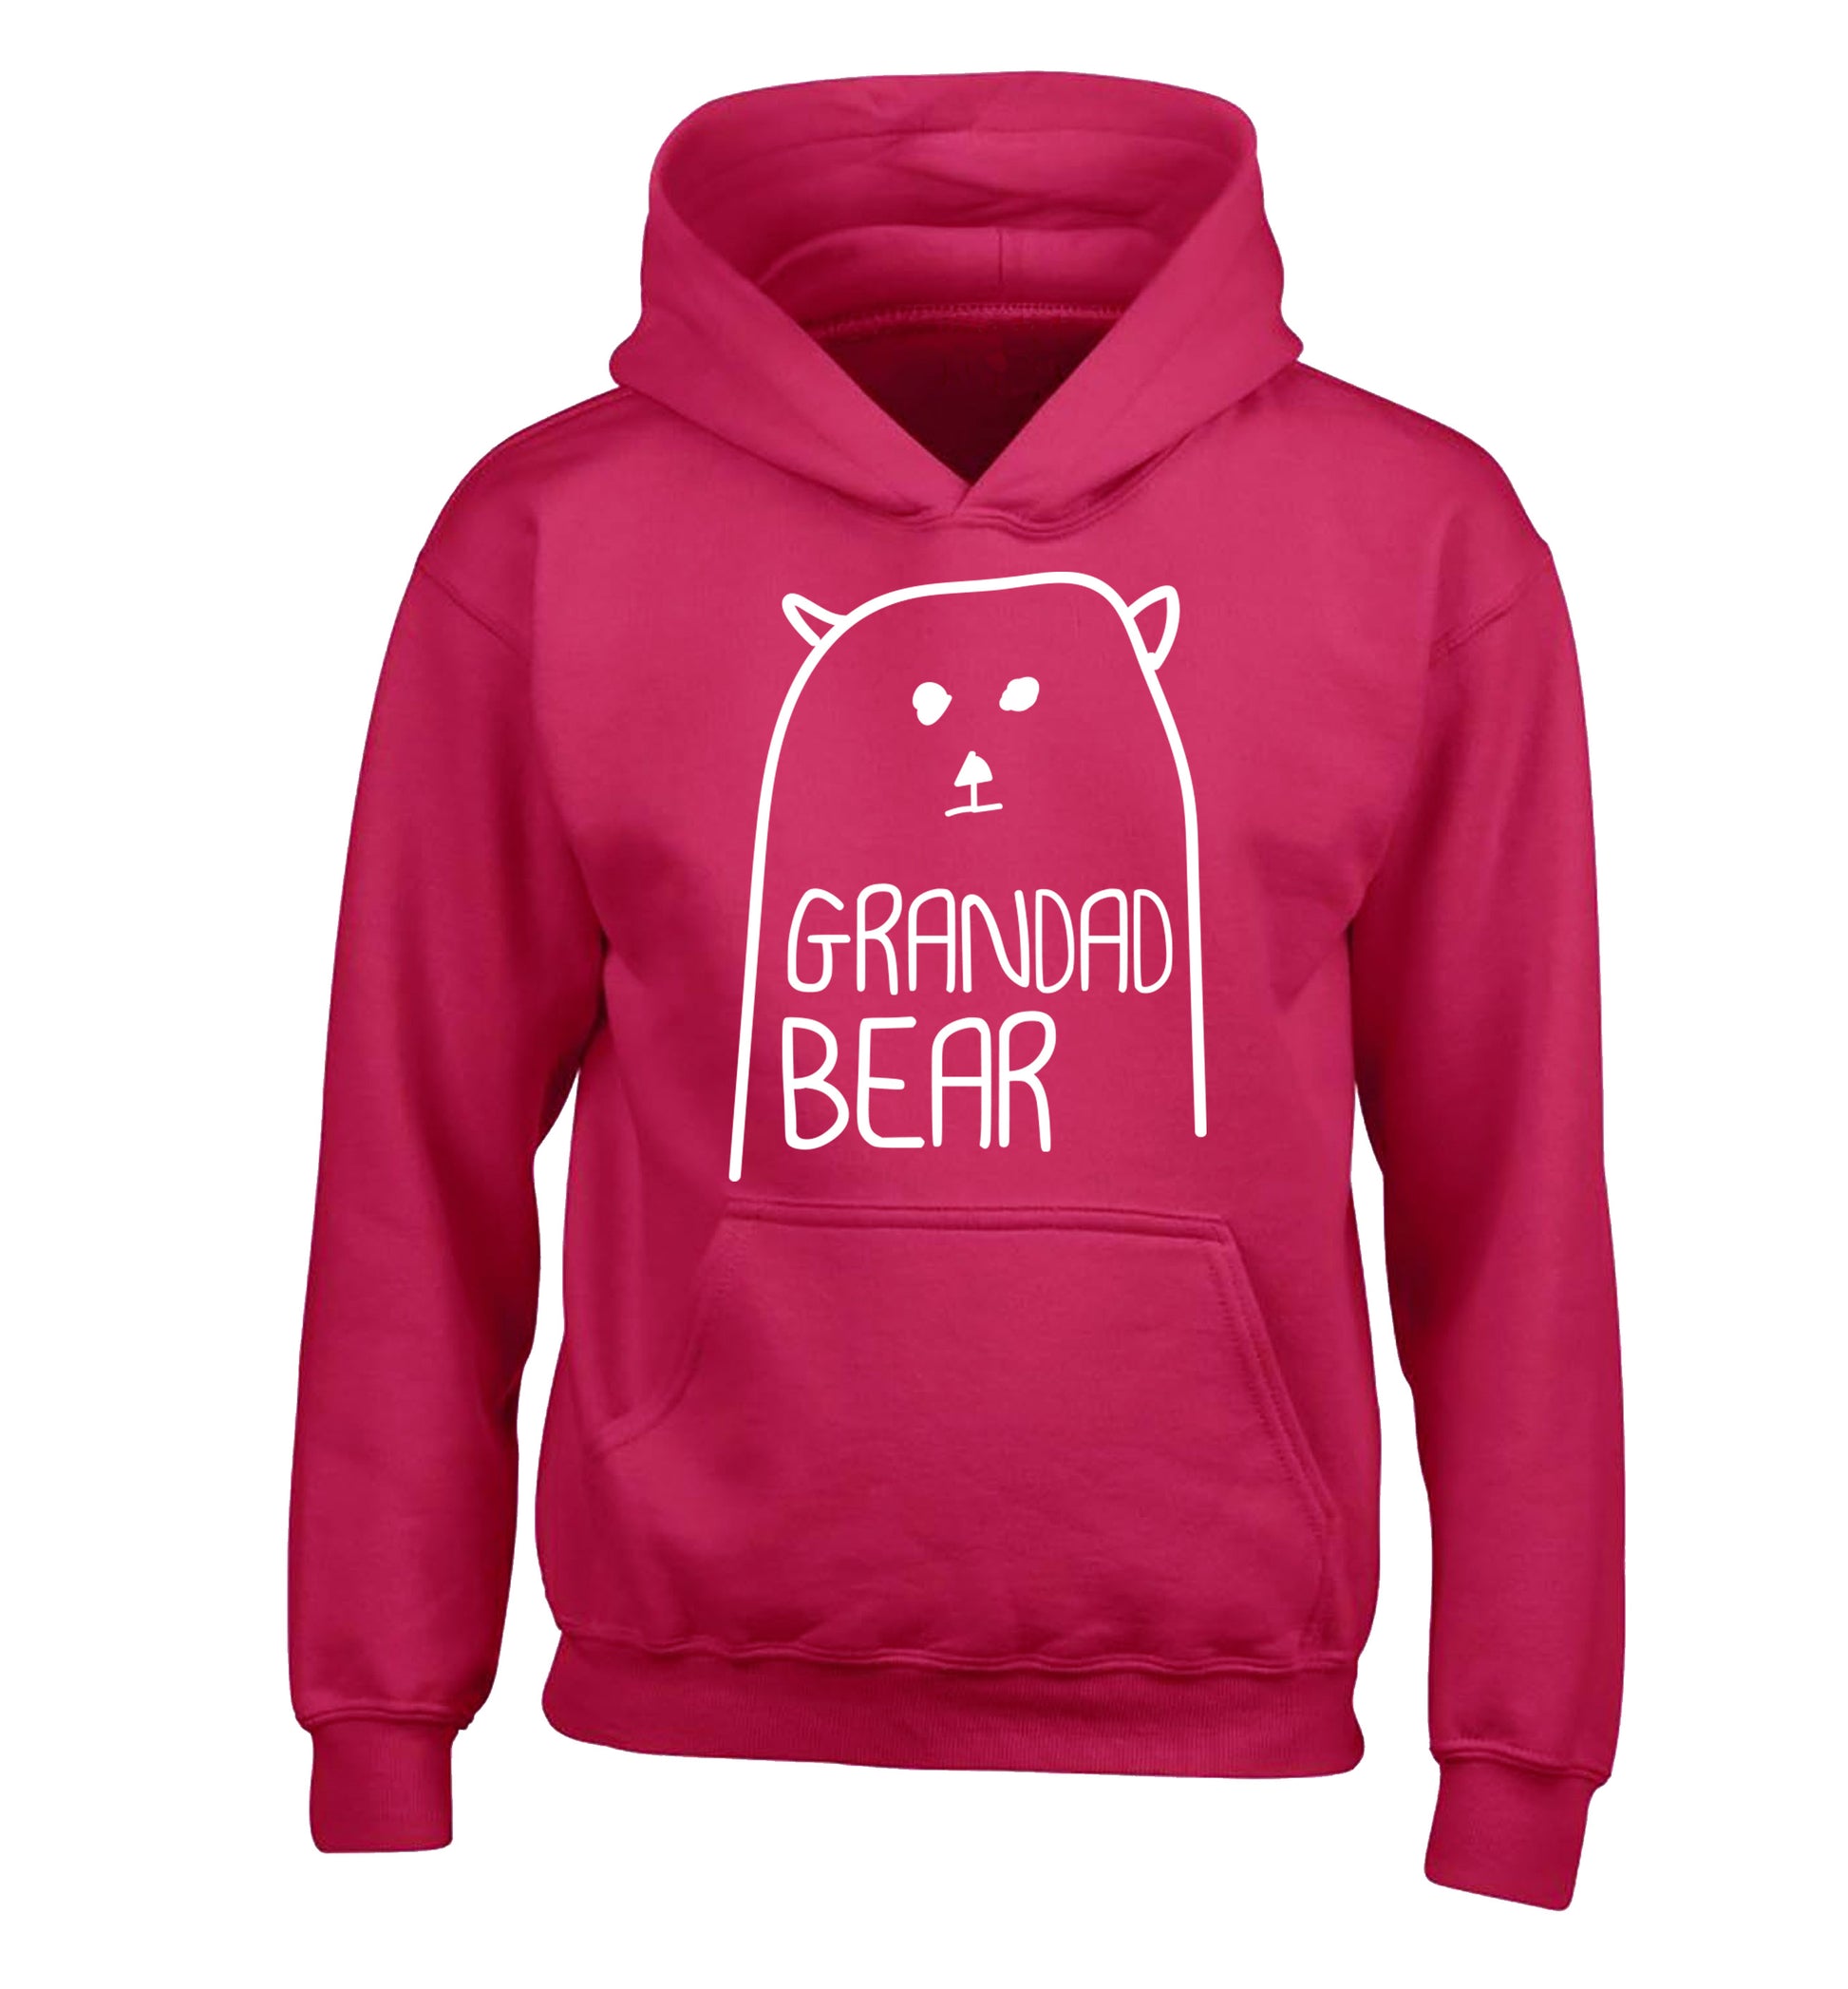 Grandad bear children's pink hoodie 12-13 Years